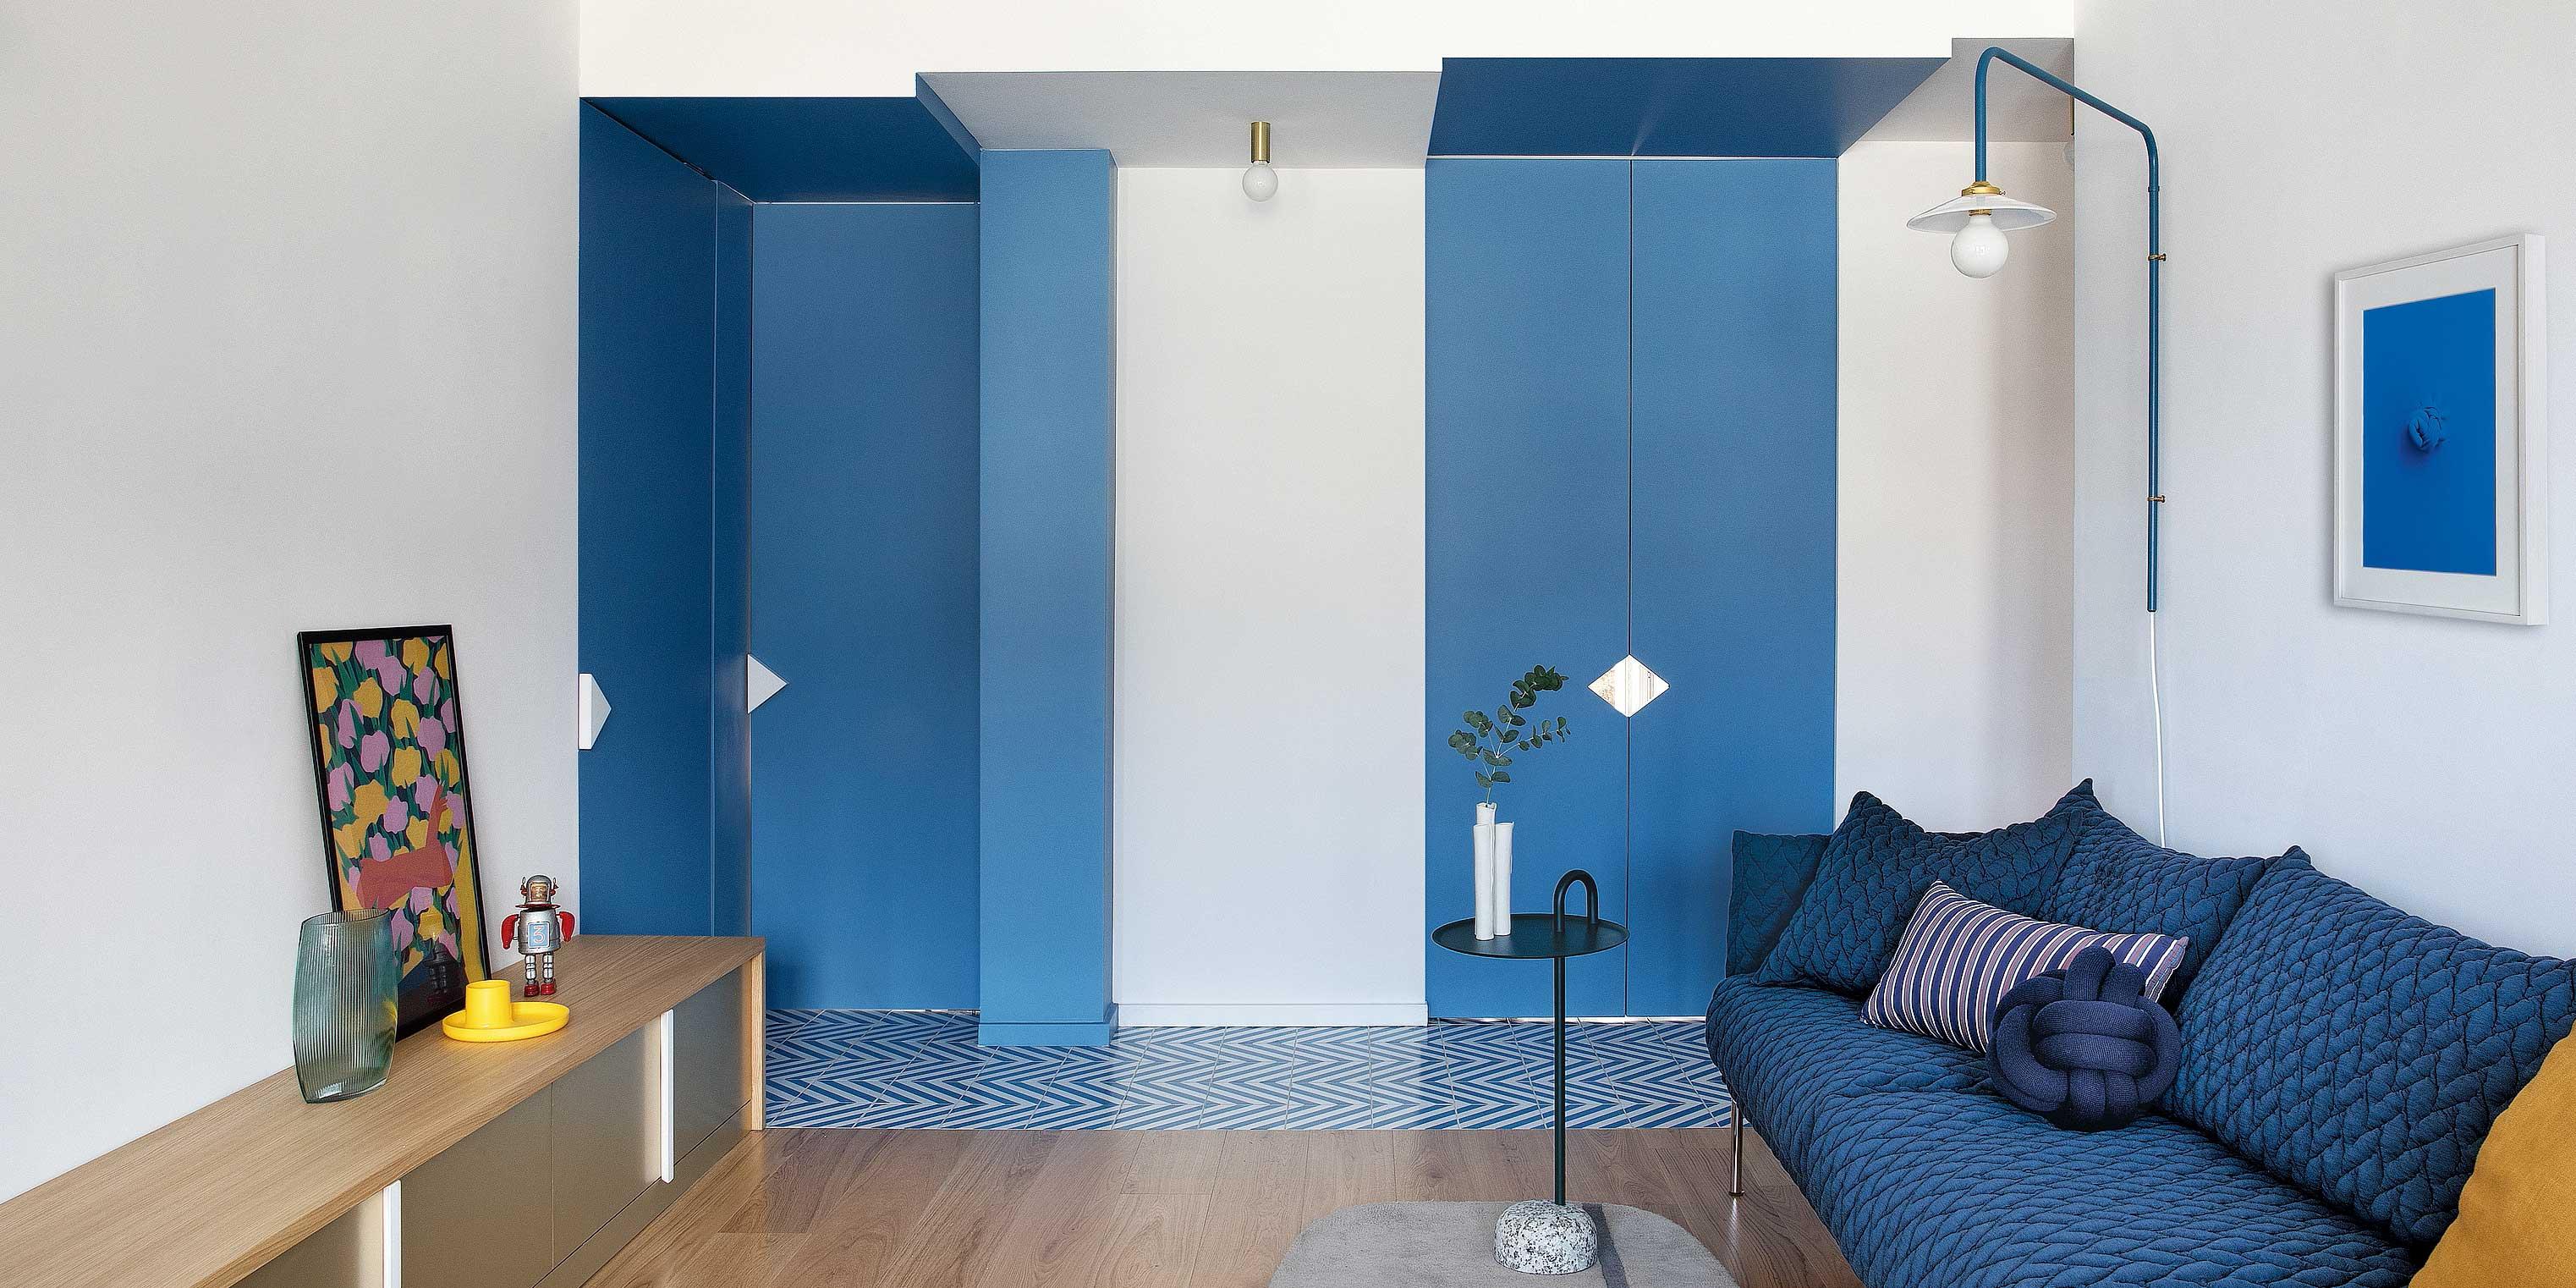 90 mq in bianco e blu: una casa pop in riviera, a San Remo - Cose di Casa